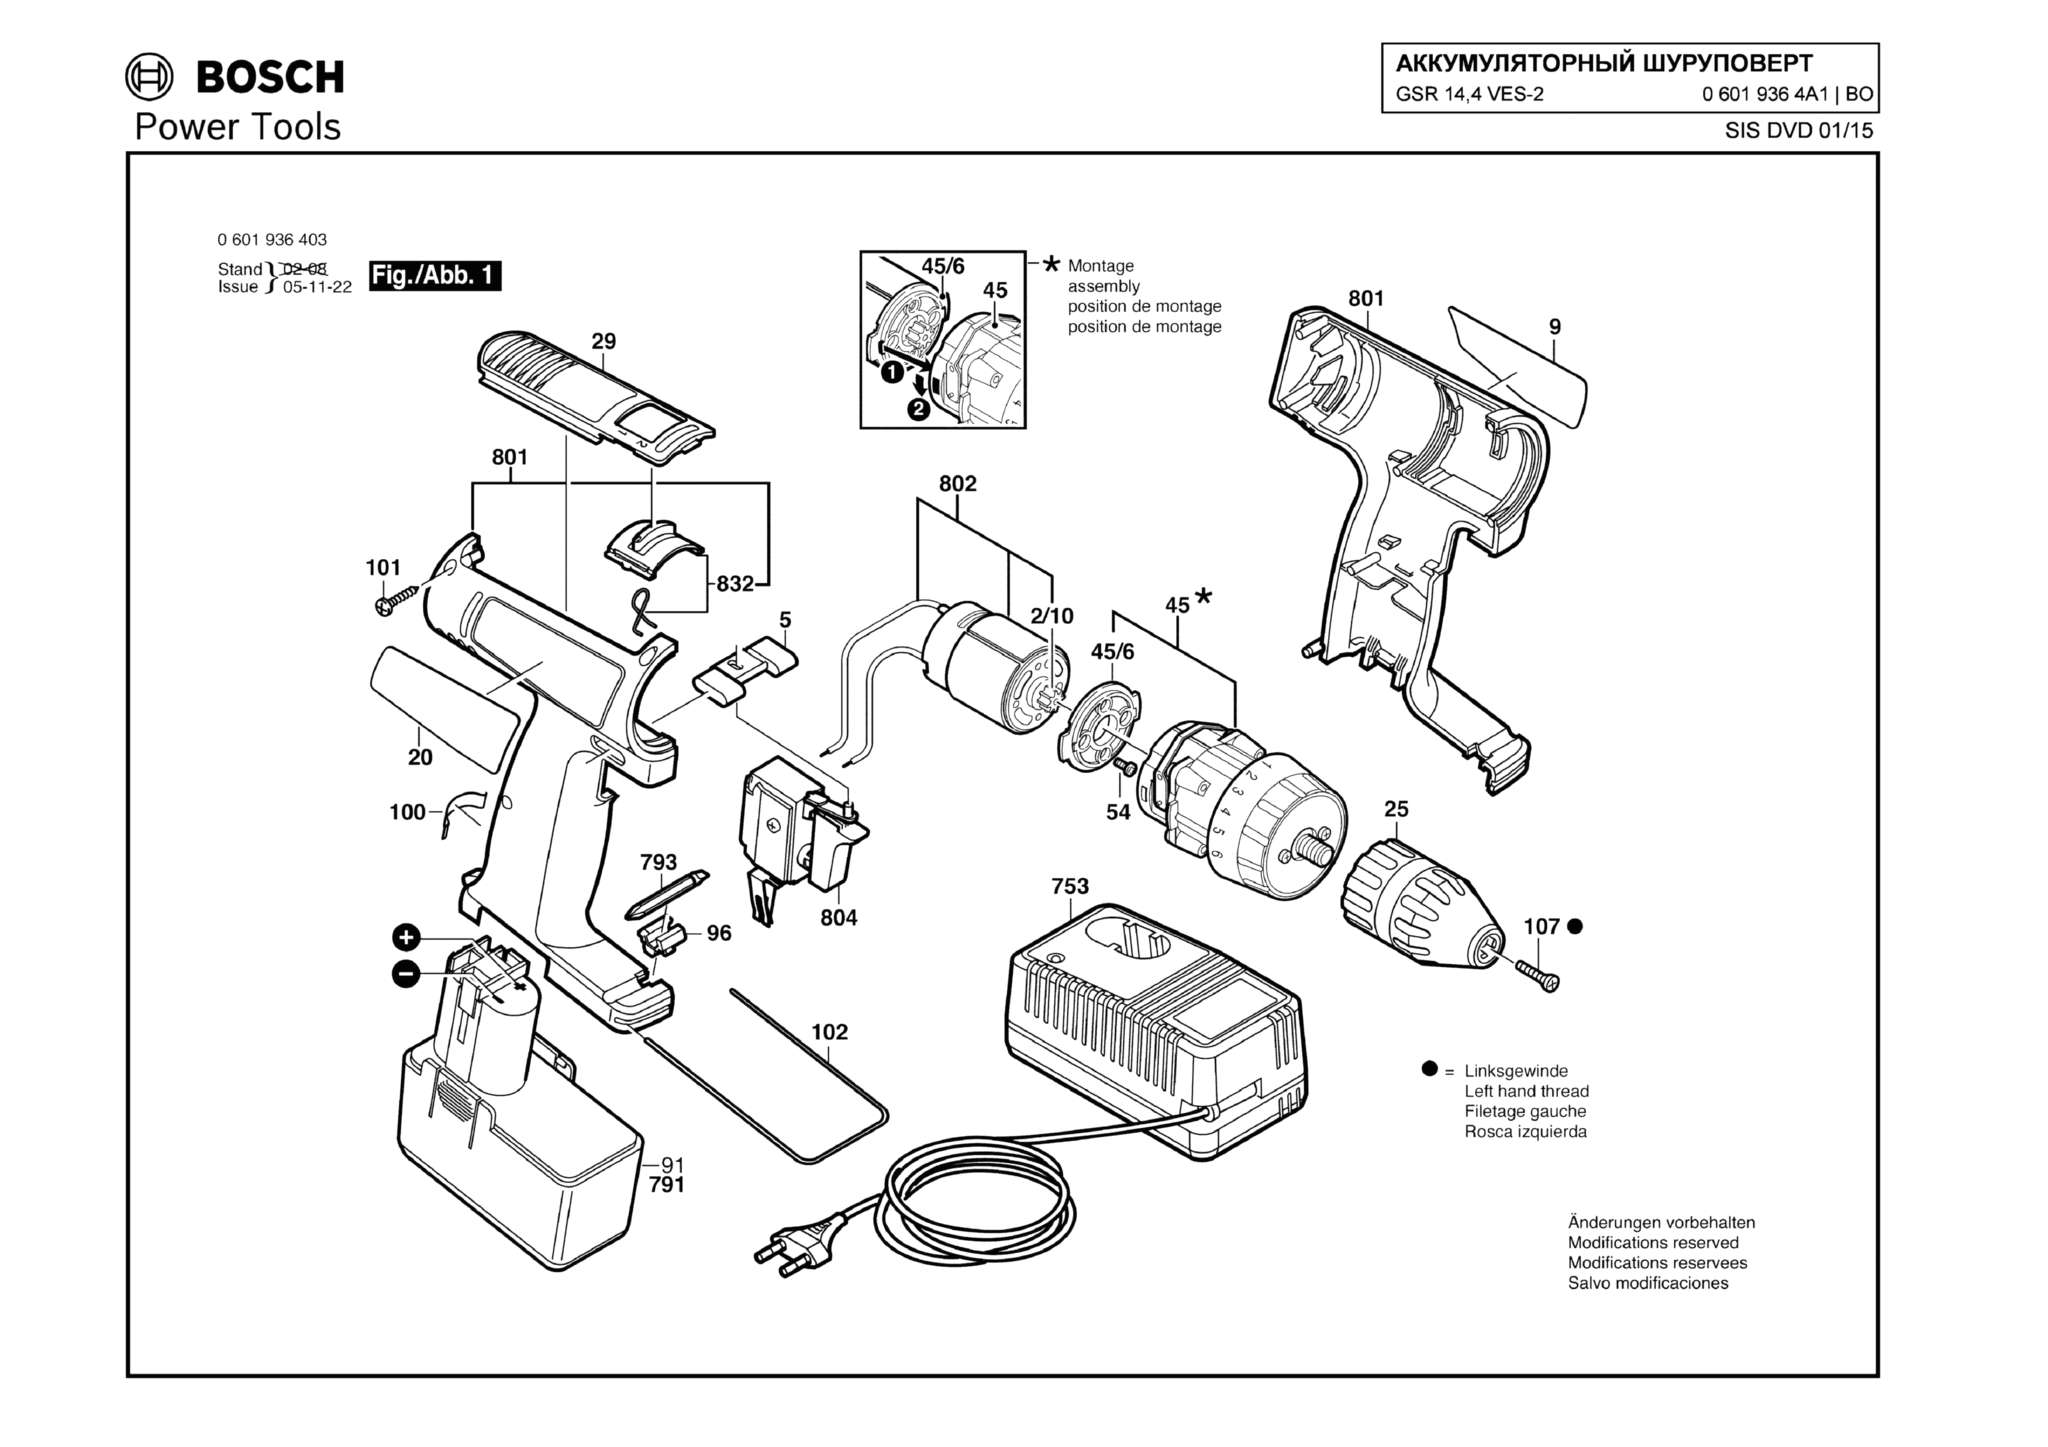 Запчасти, схема и деталировка Bosch GSR 14,4 VES-2 (ТИП 06019364A1)